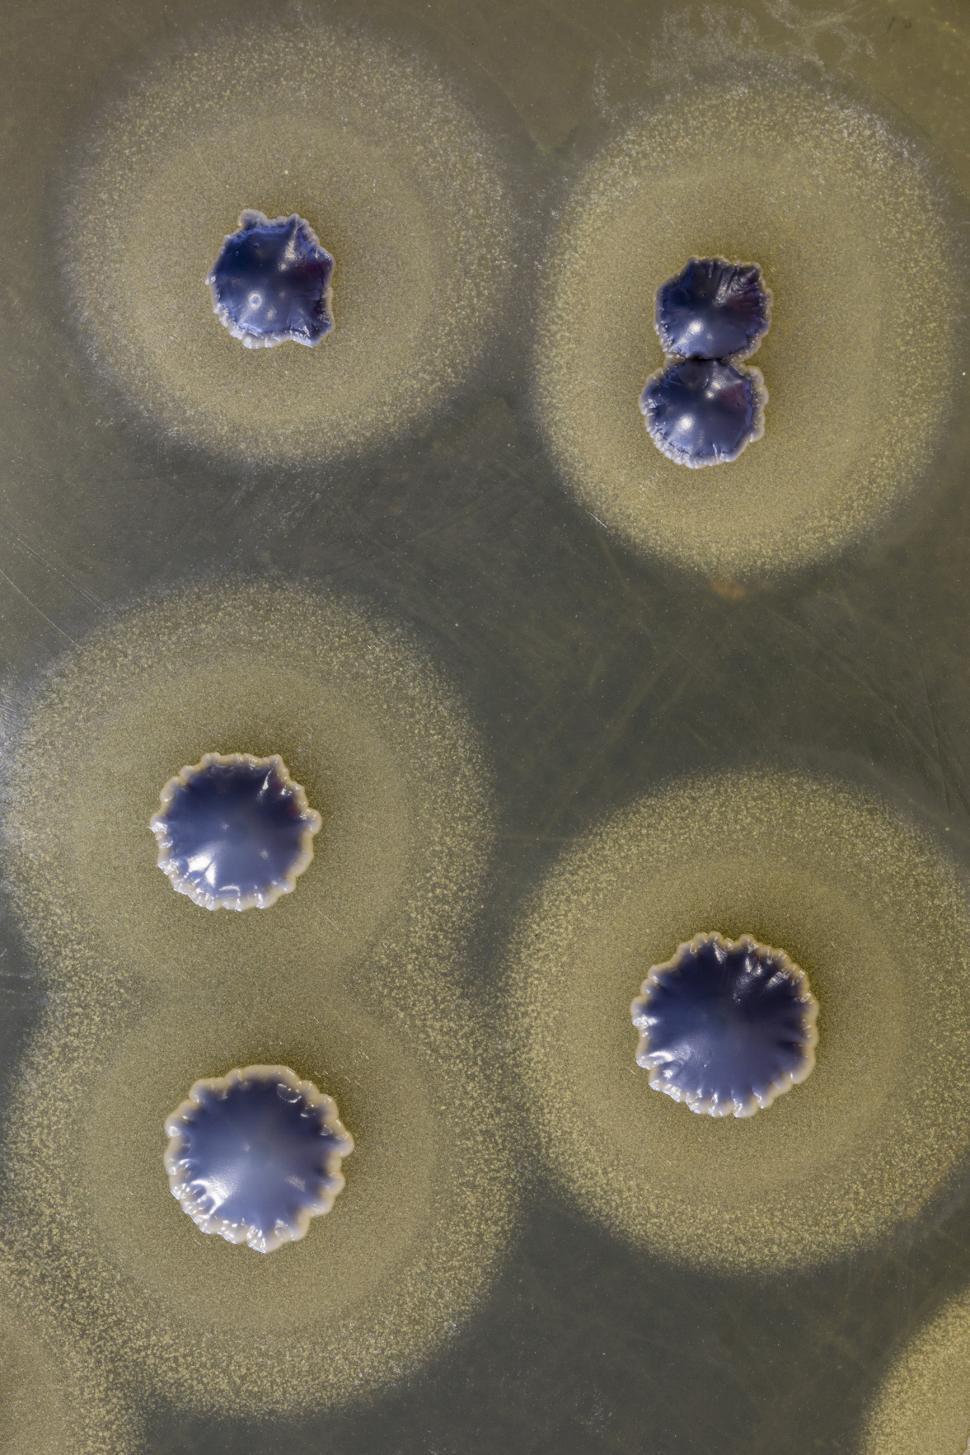 Free Image of Macro of  Staphylococcus aureus  